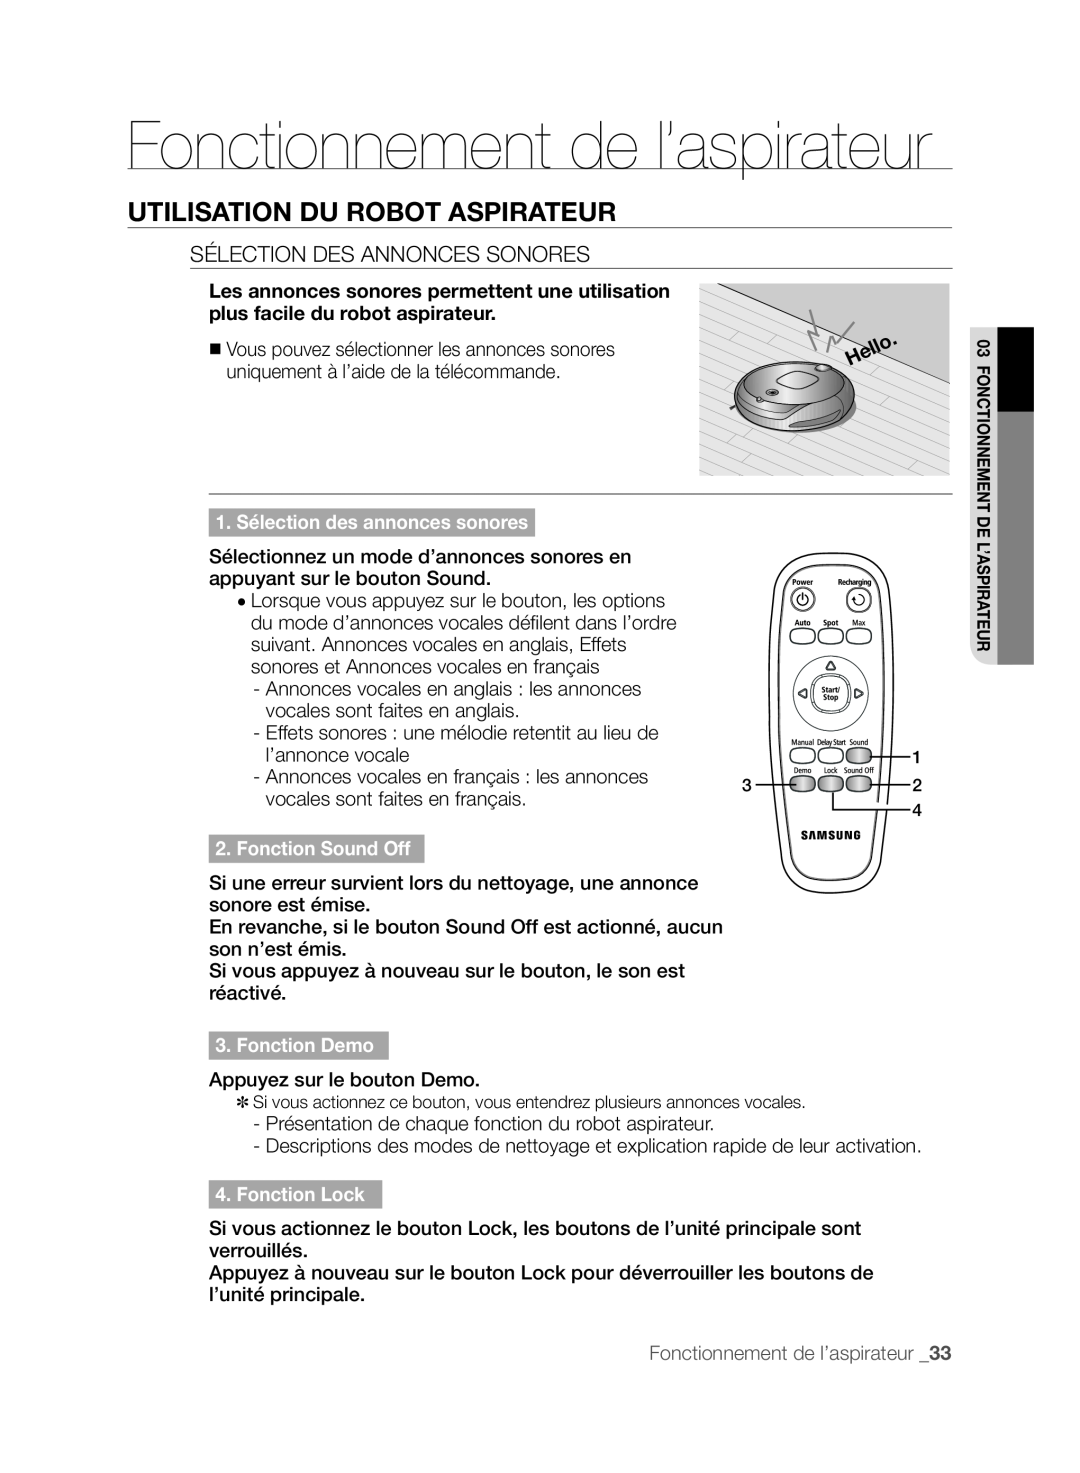 Samsung SR8830 Fonctionnement de l’aspirateur, Utilisation Du Robot Aspirateur, 1. Sélection des annonces sonores 